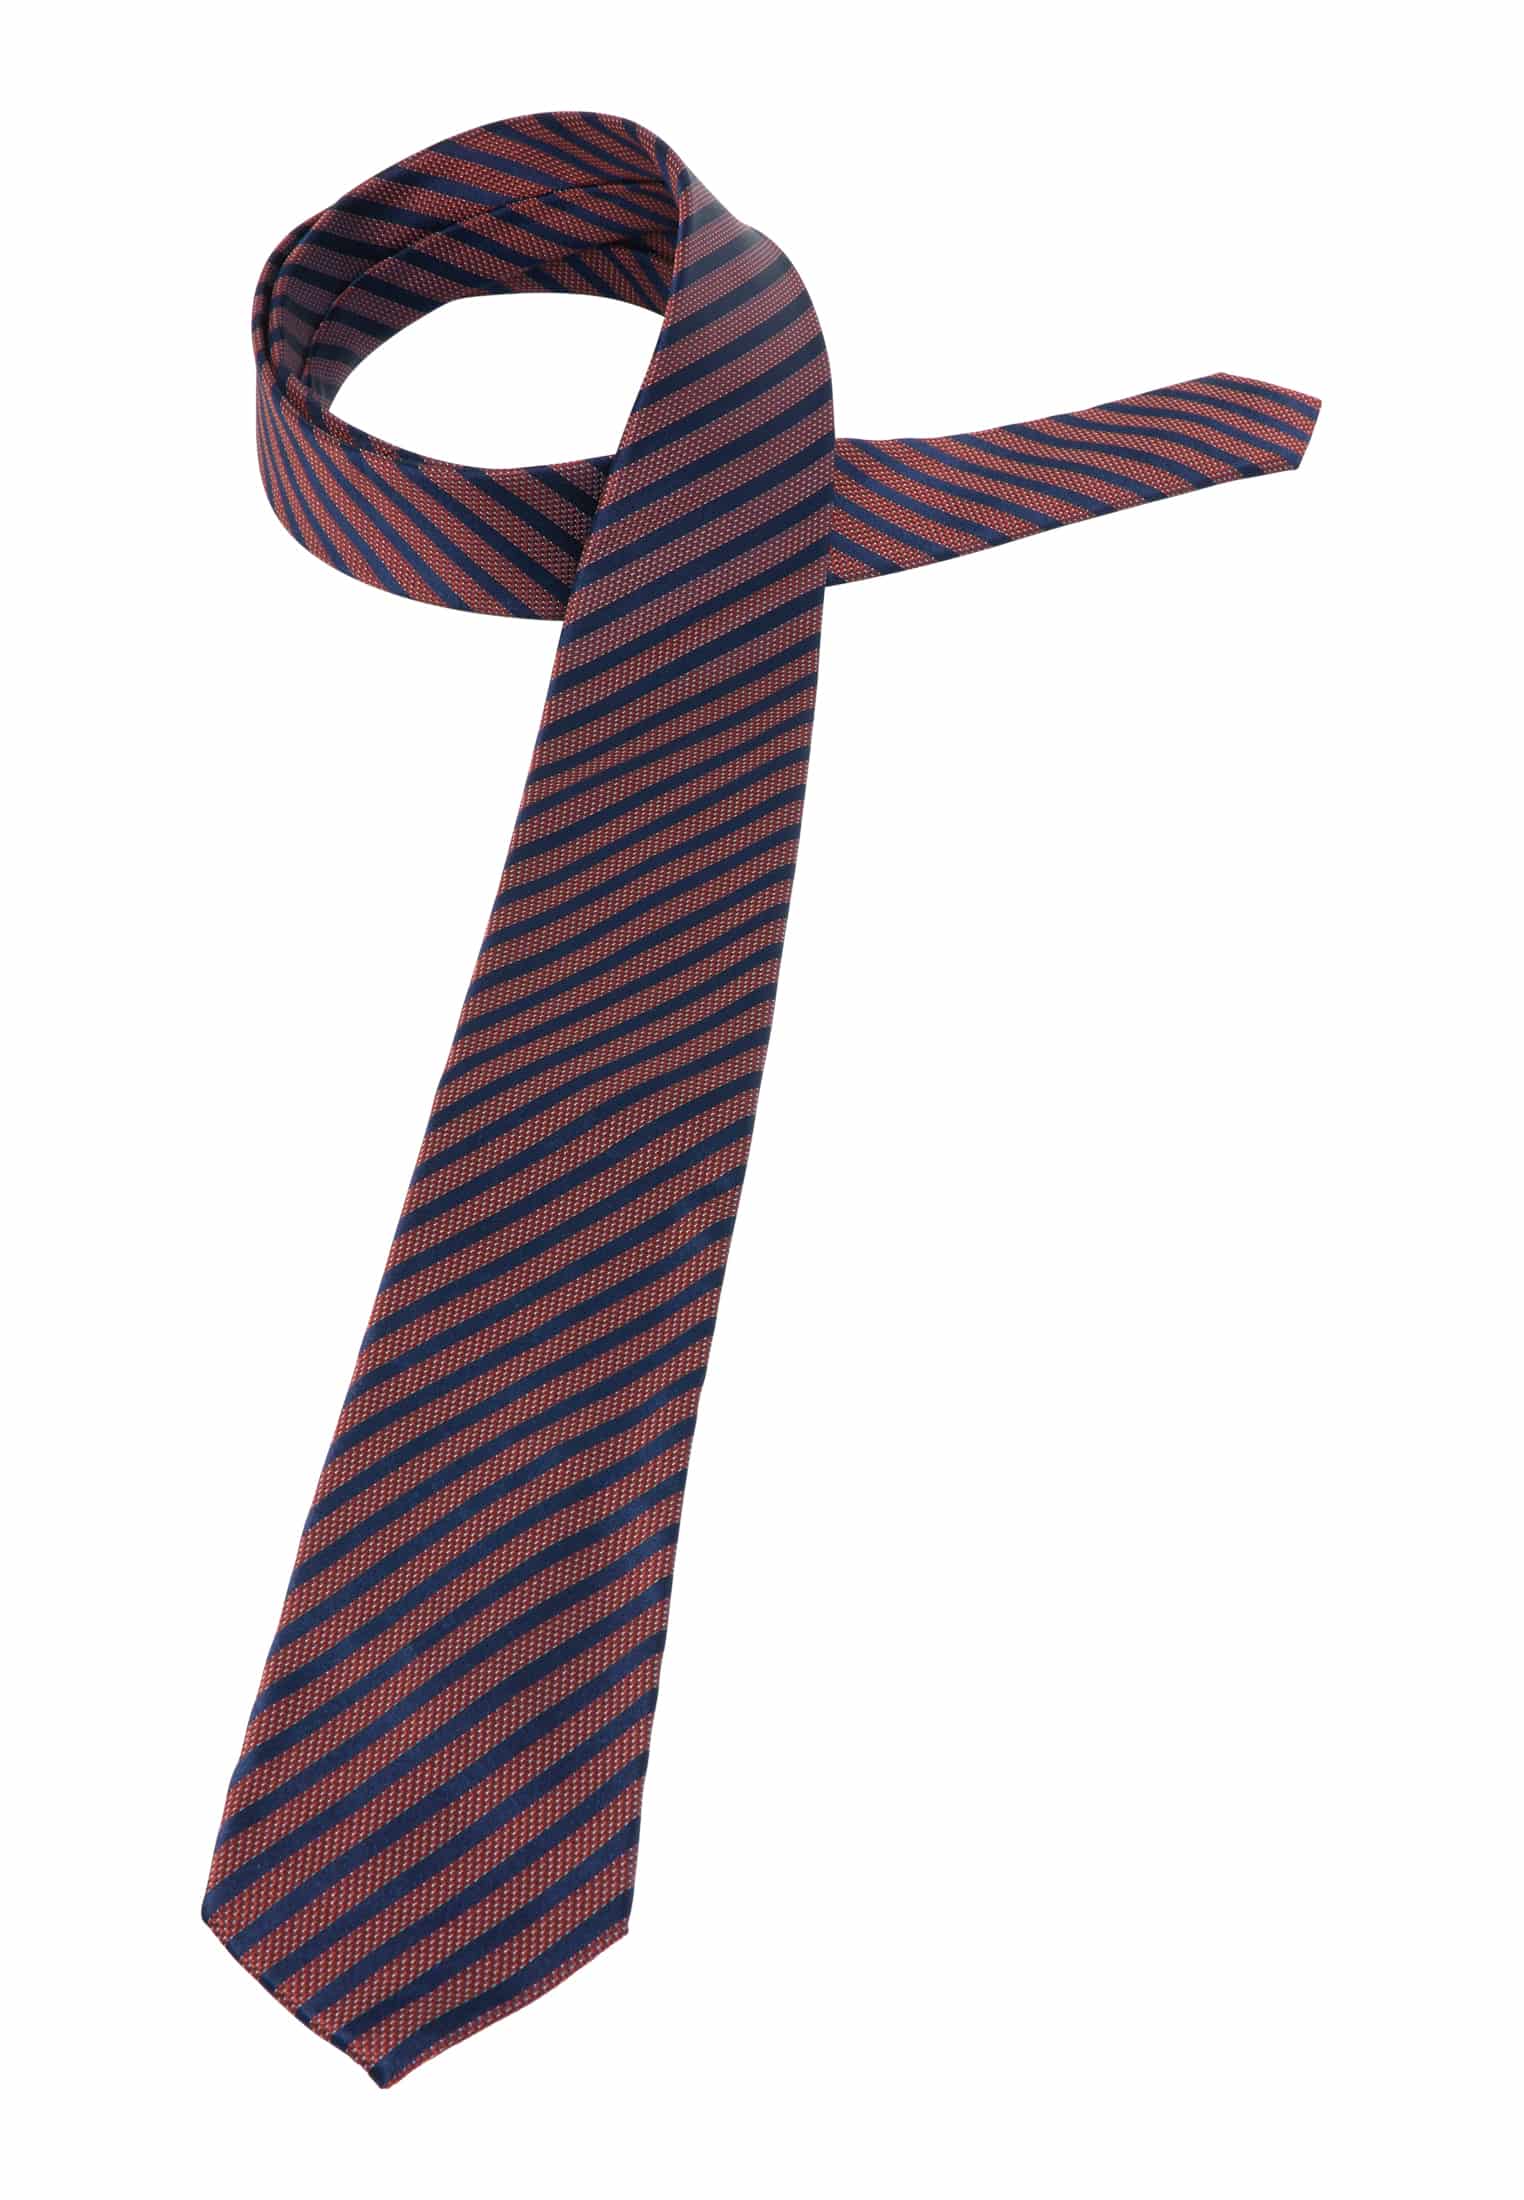 Krawatte in | gestreift 142 rot rot | 1AC01905-05-01-142 